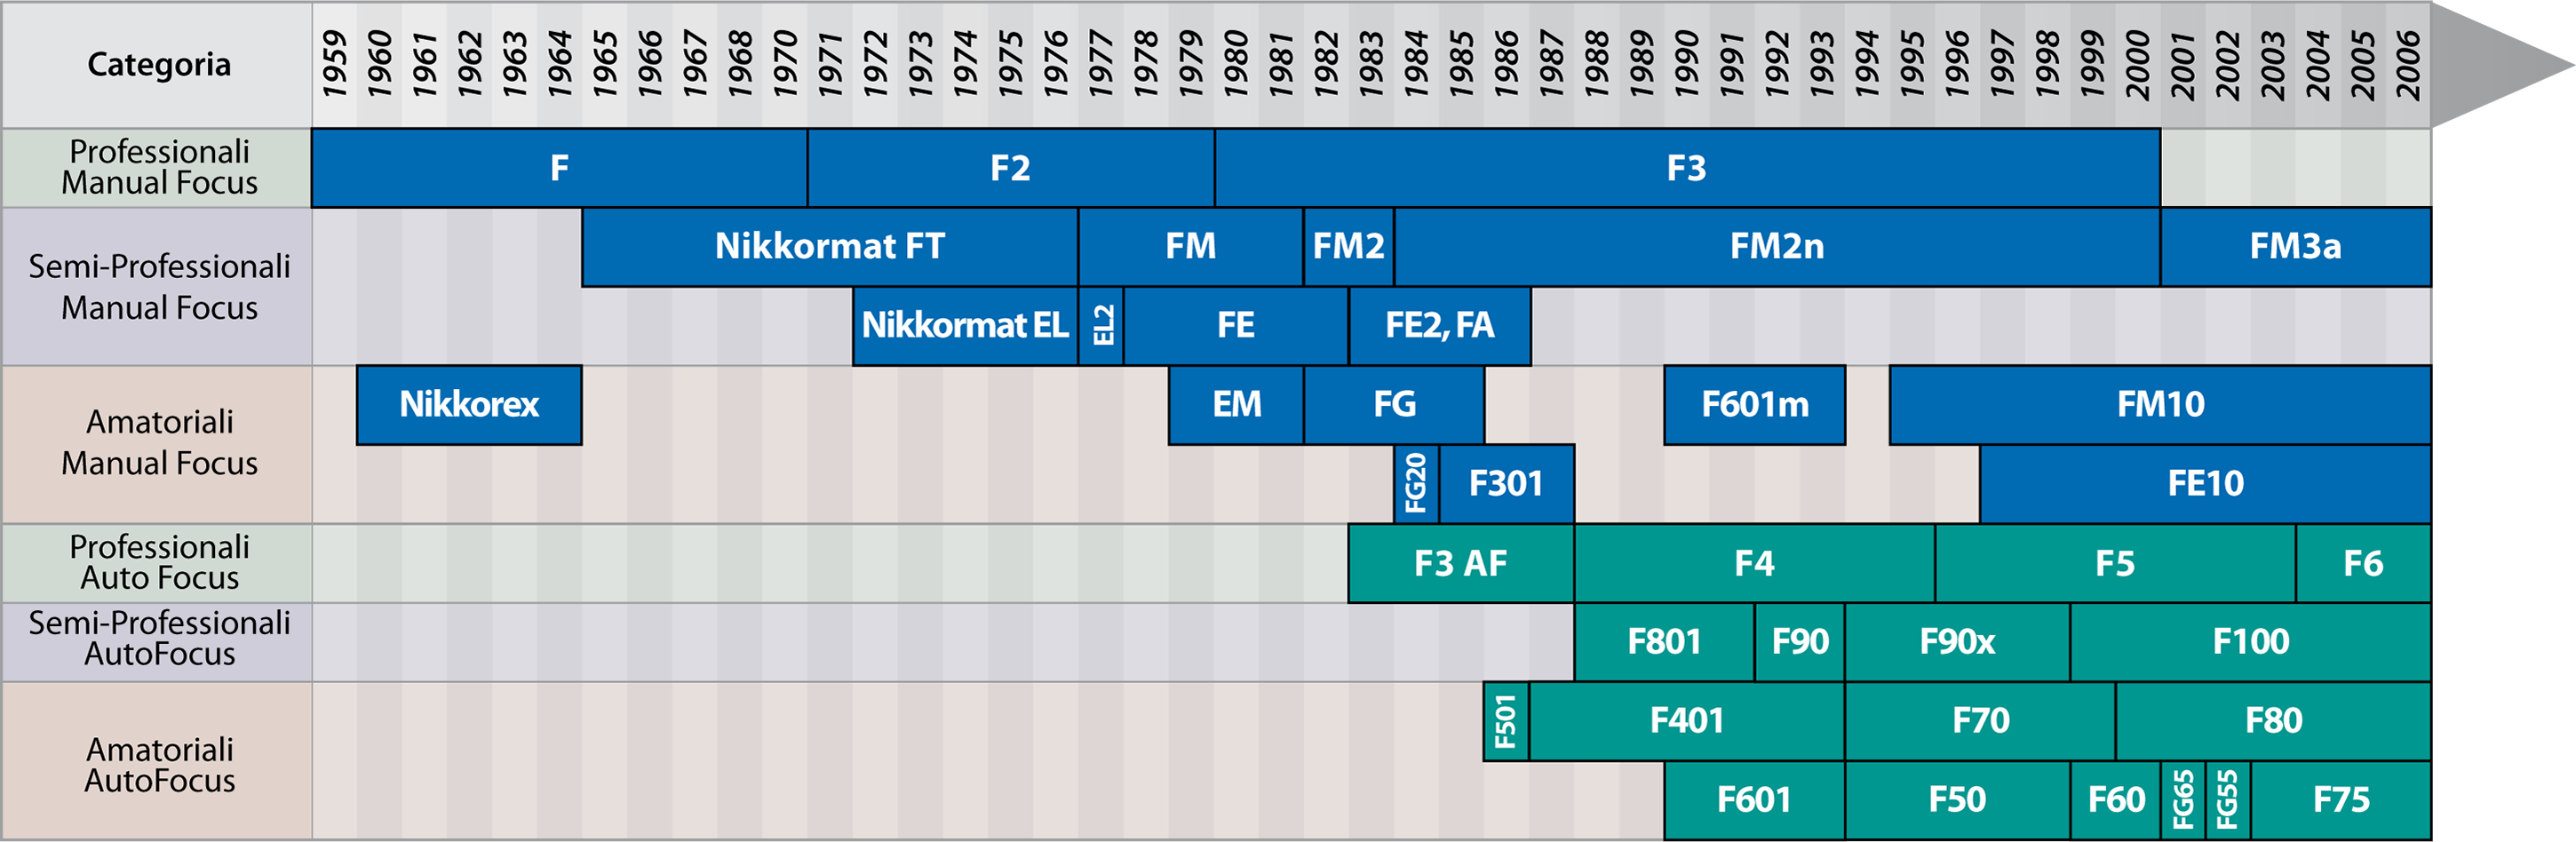 Timeline Nikon SLR